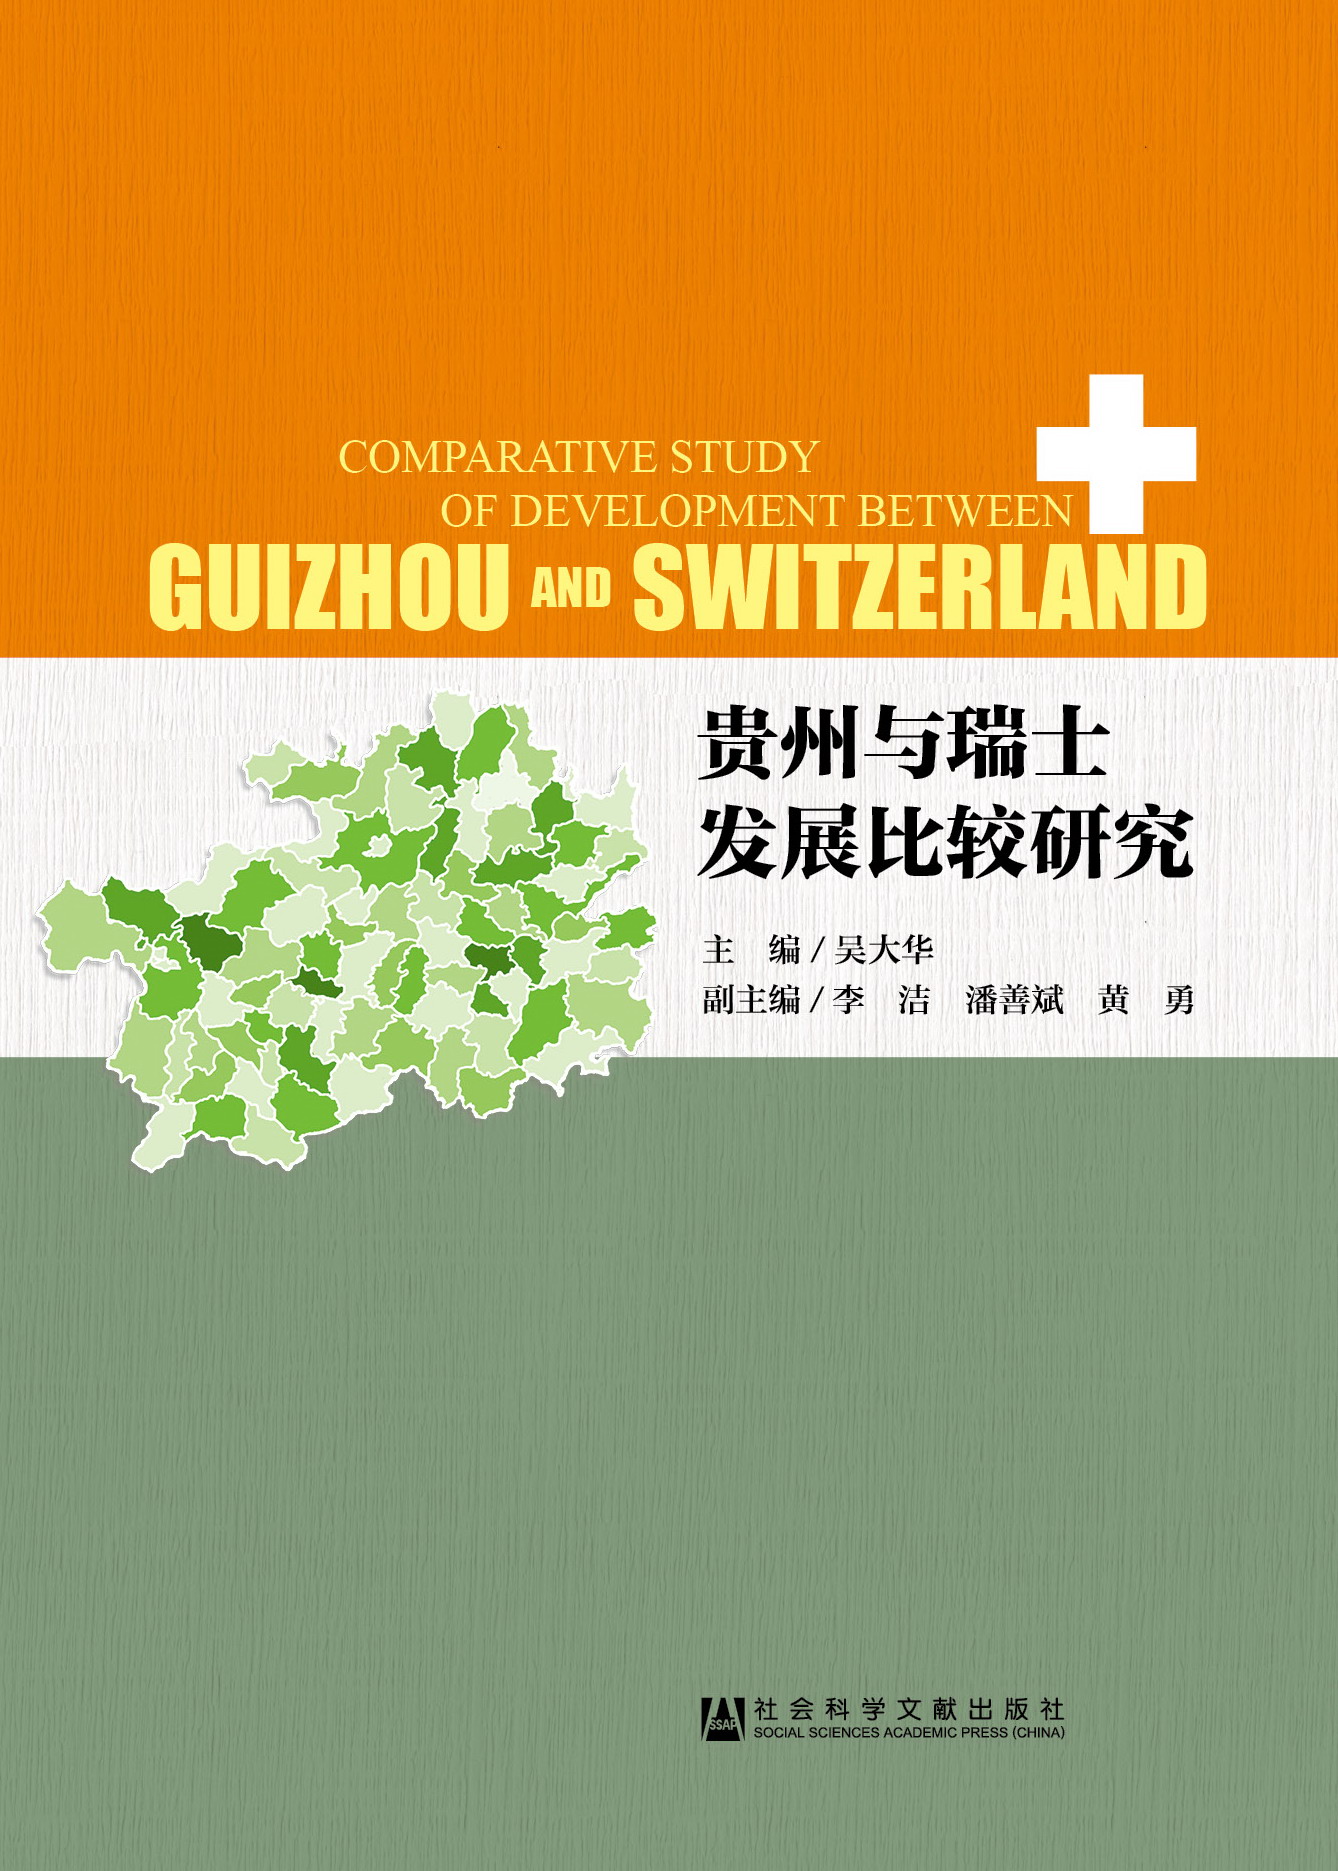 贵州与瑞士发展比较研究